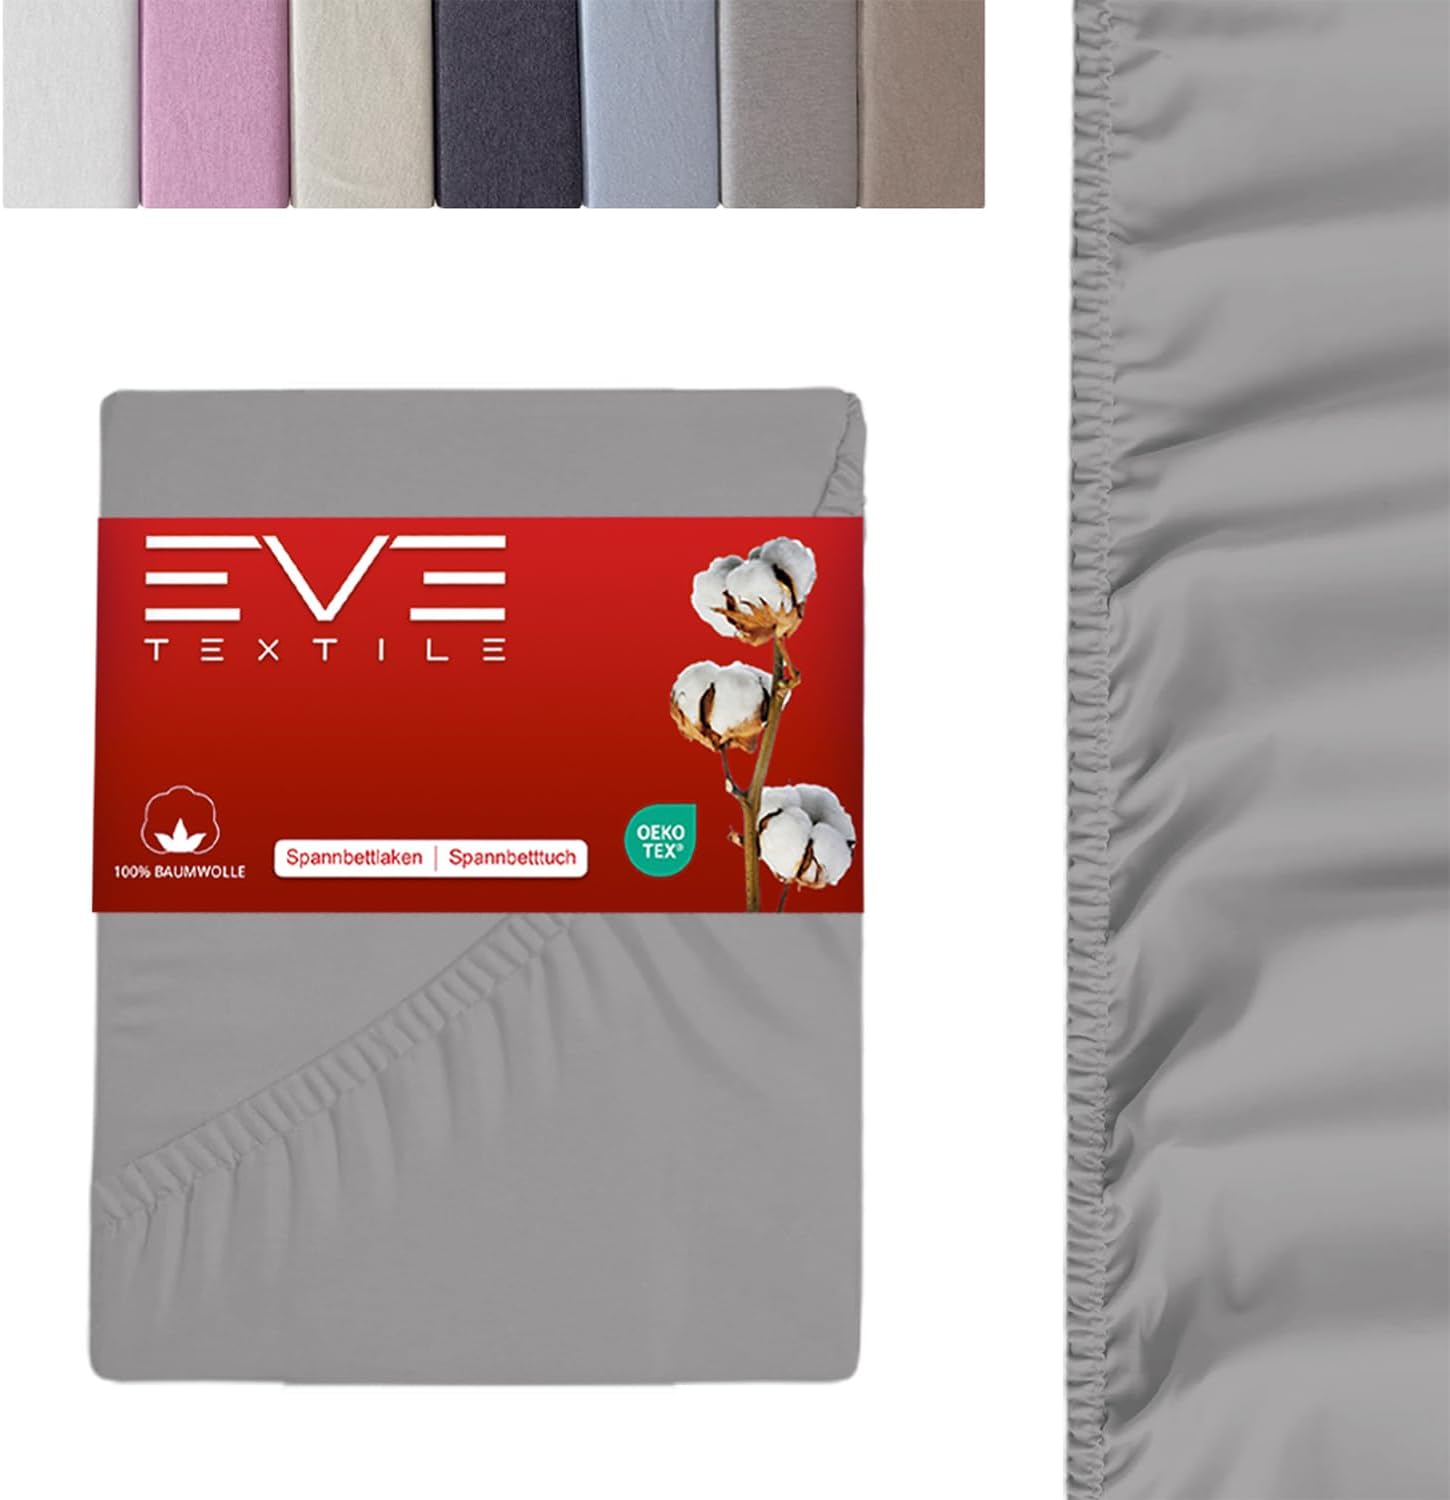 EVE Textile Matratzenschoner und Spannbettlaken